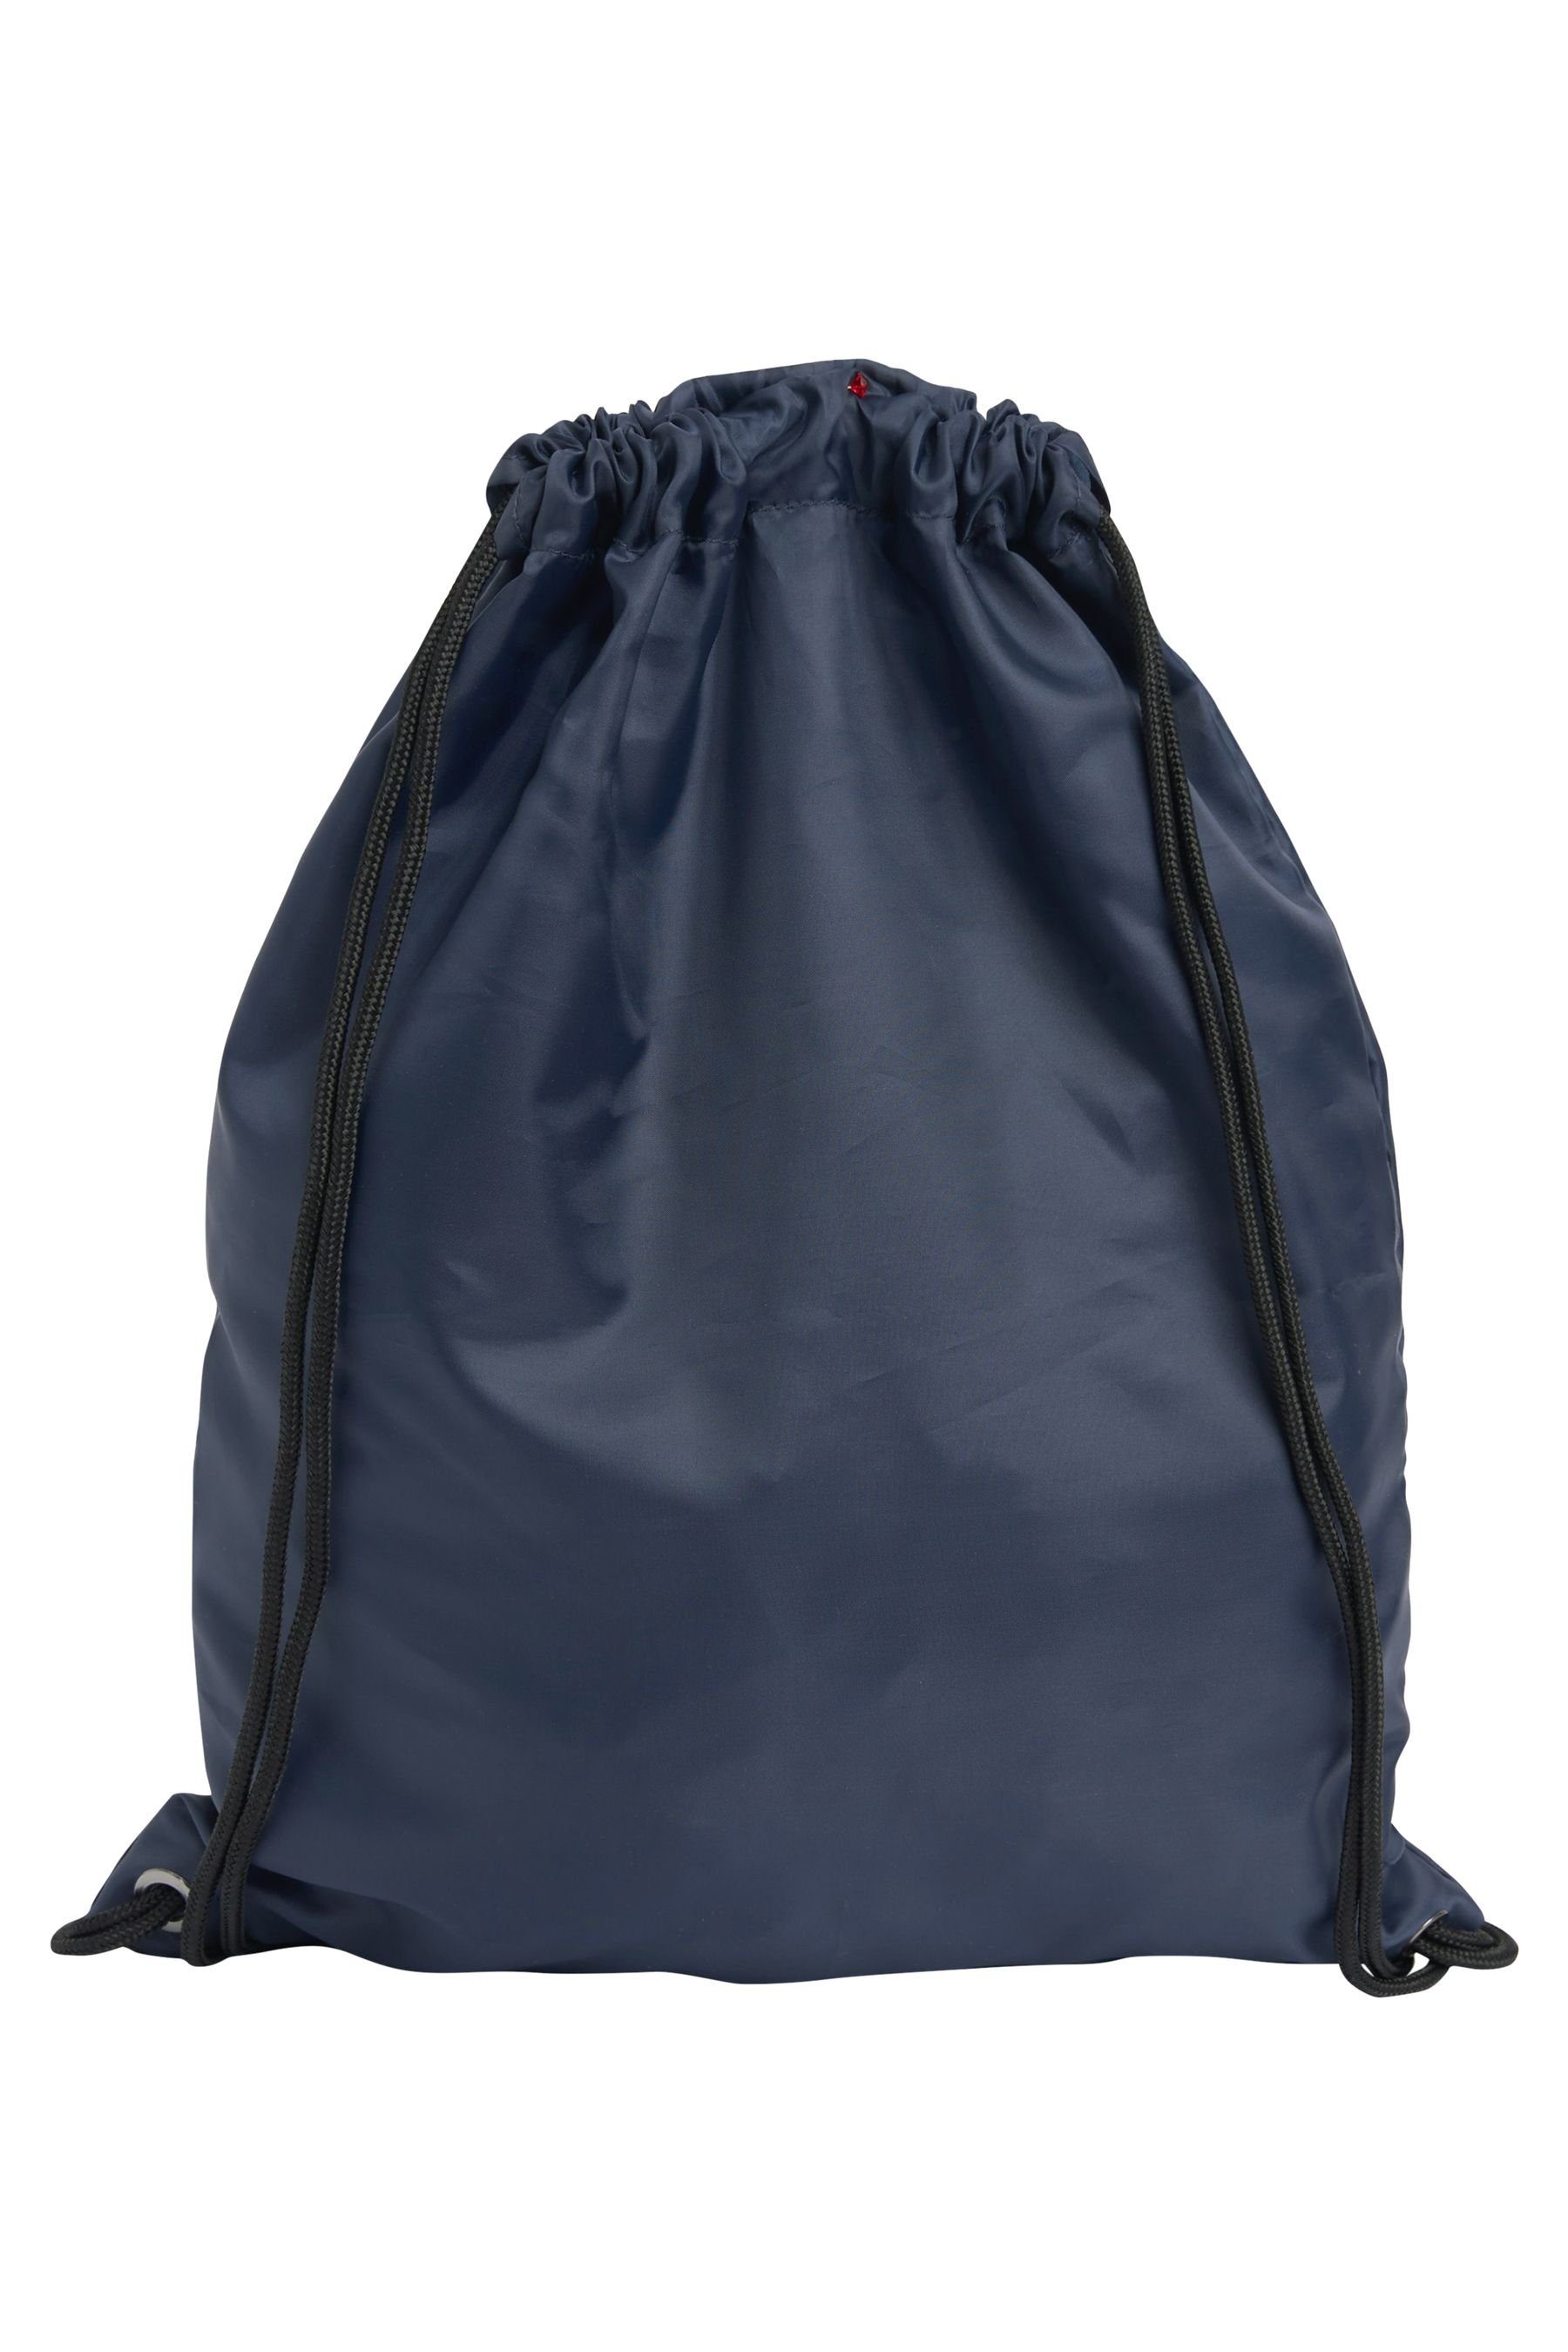 Next Rucksack Handtasche mit Kordelzug Navy Blue